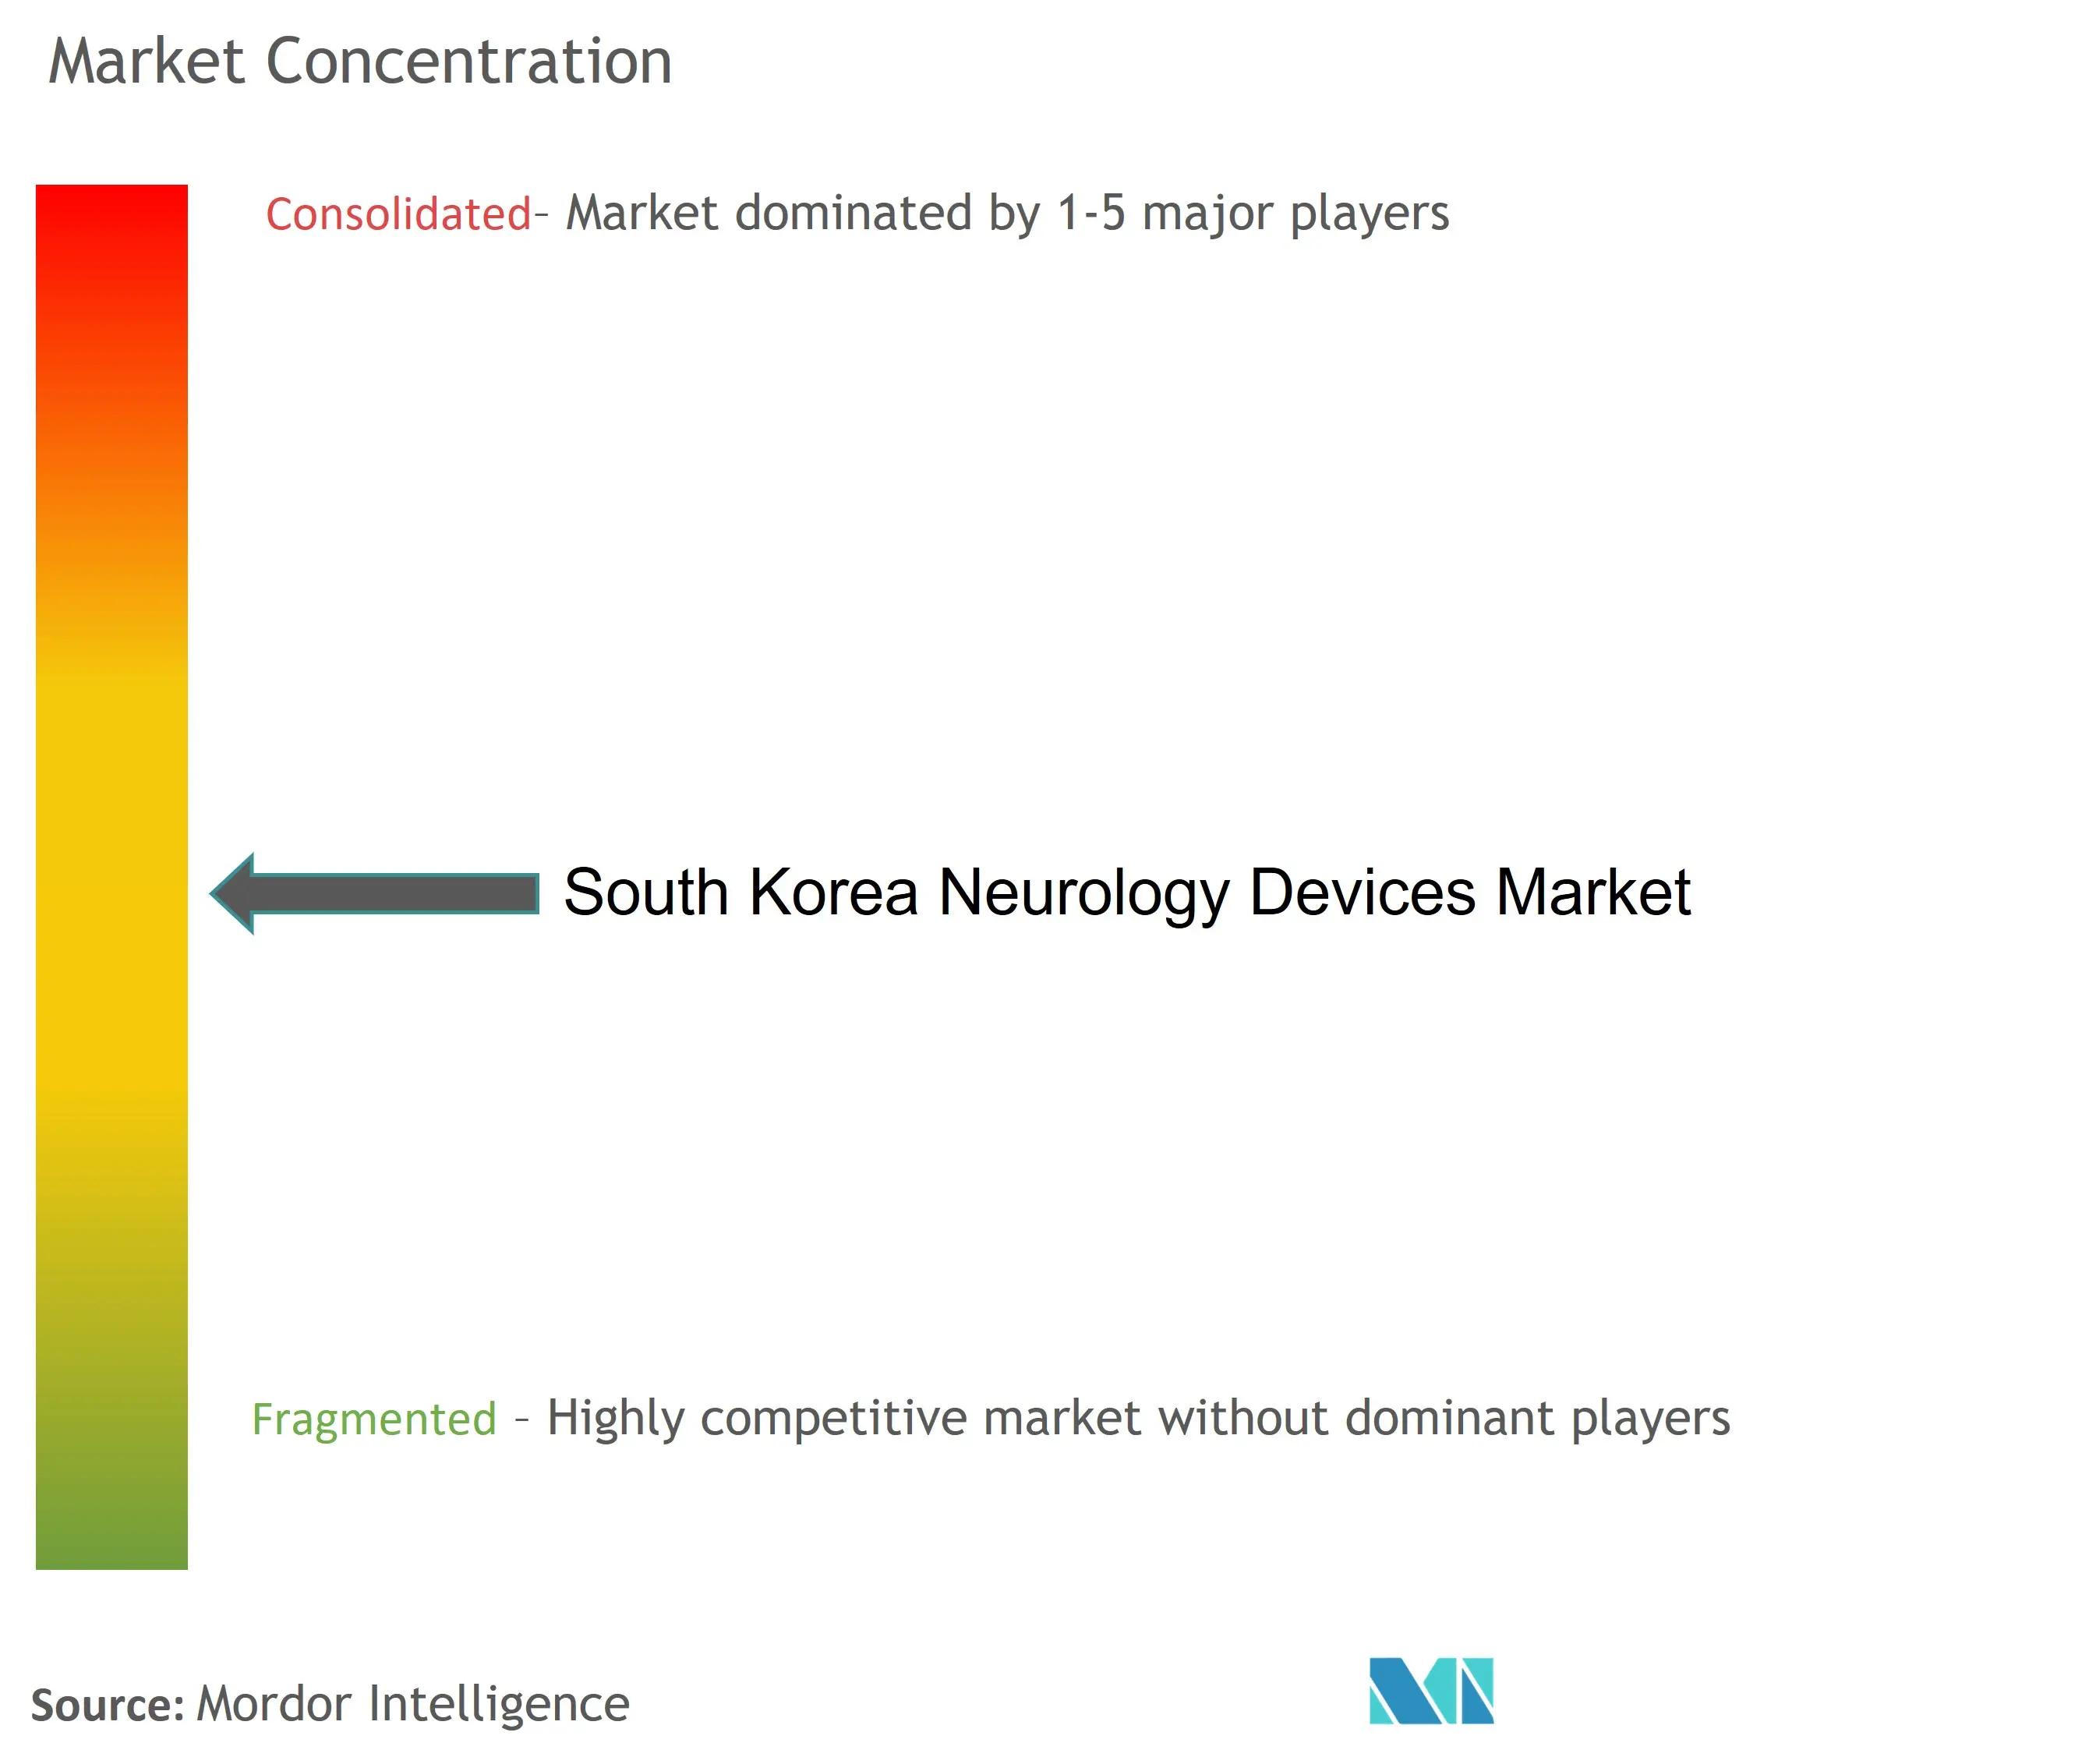 韩国神经科设备市场集中度